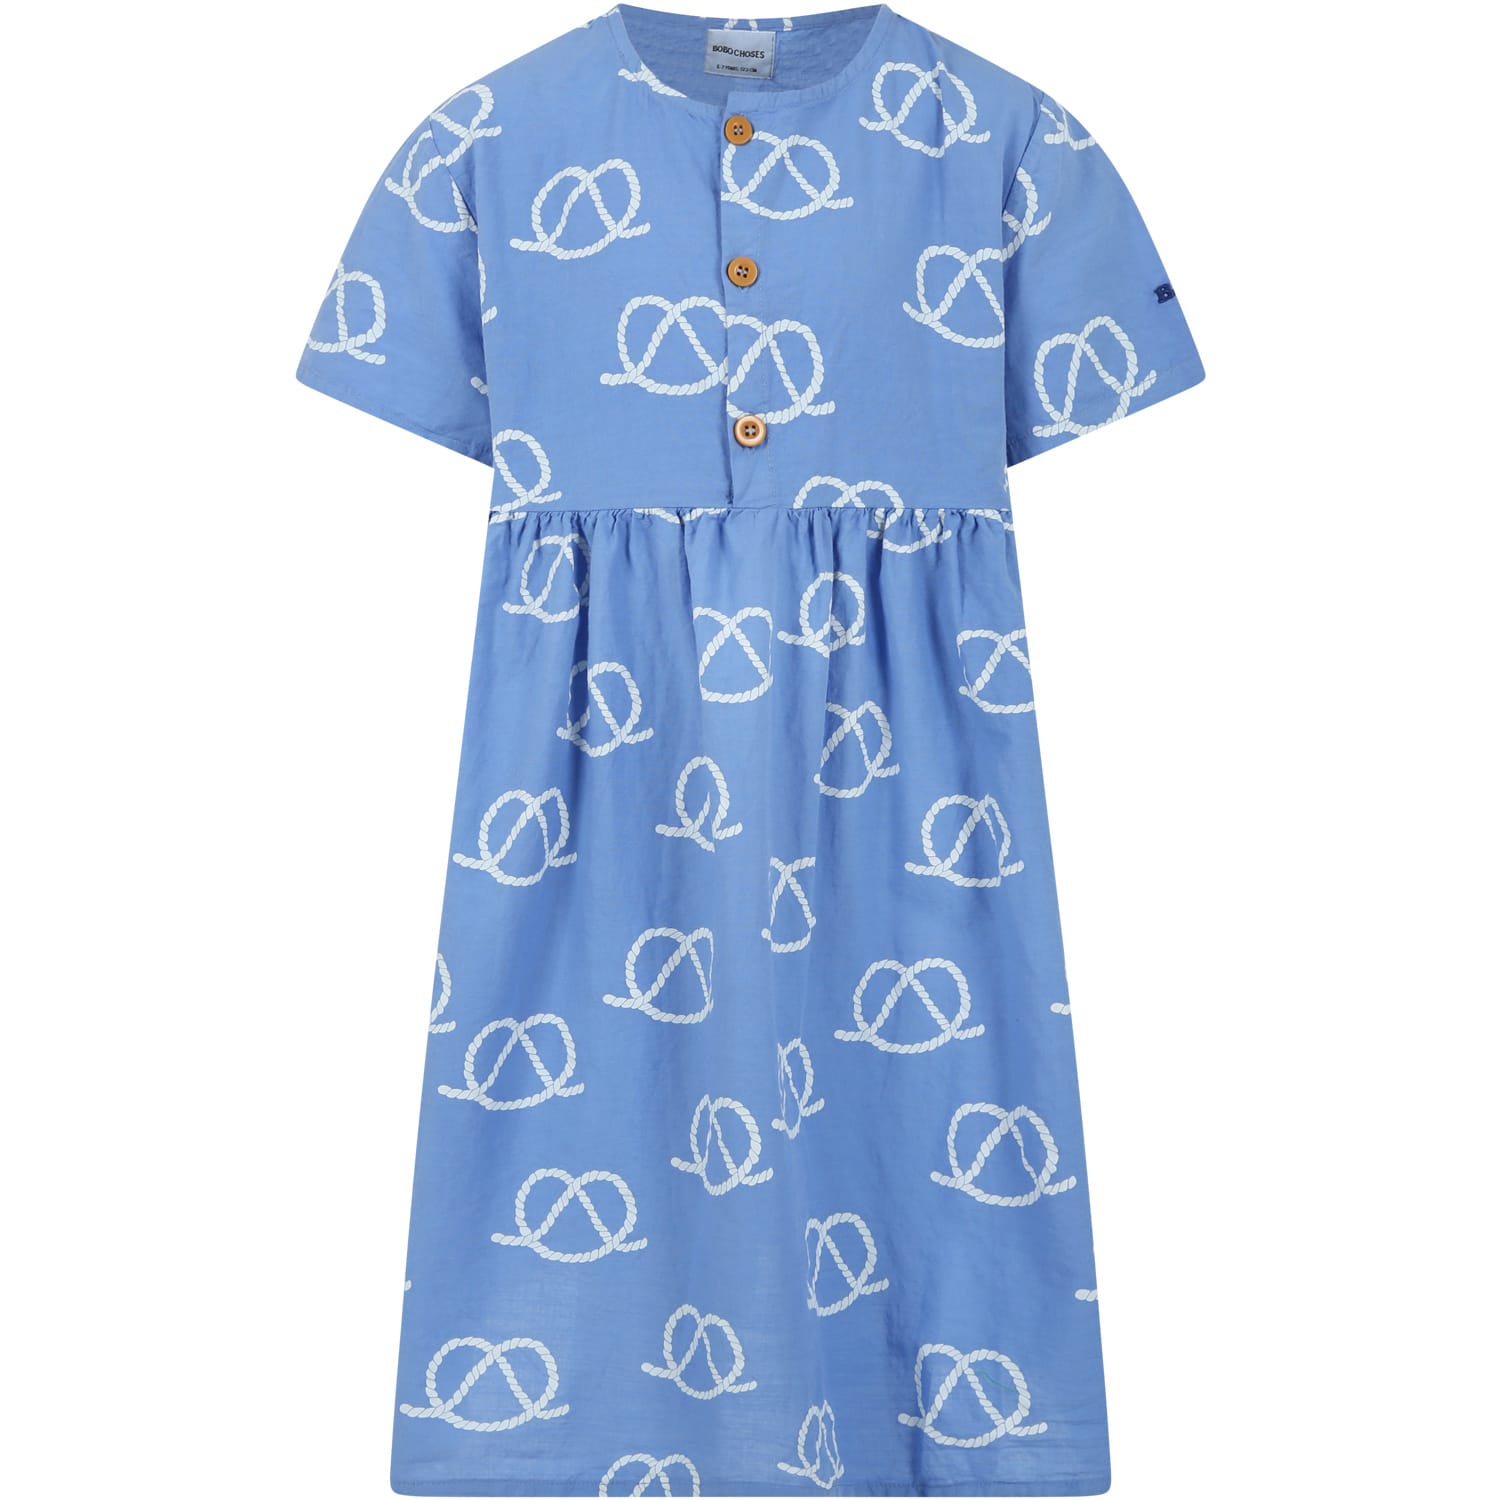 Bobo Choses Kids' Light Blue Dress For Girl With Logo